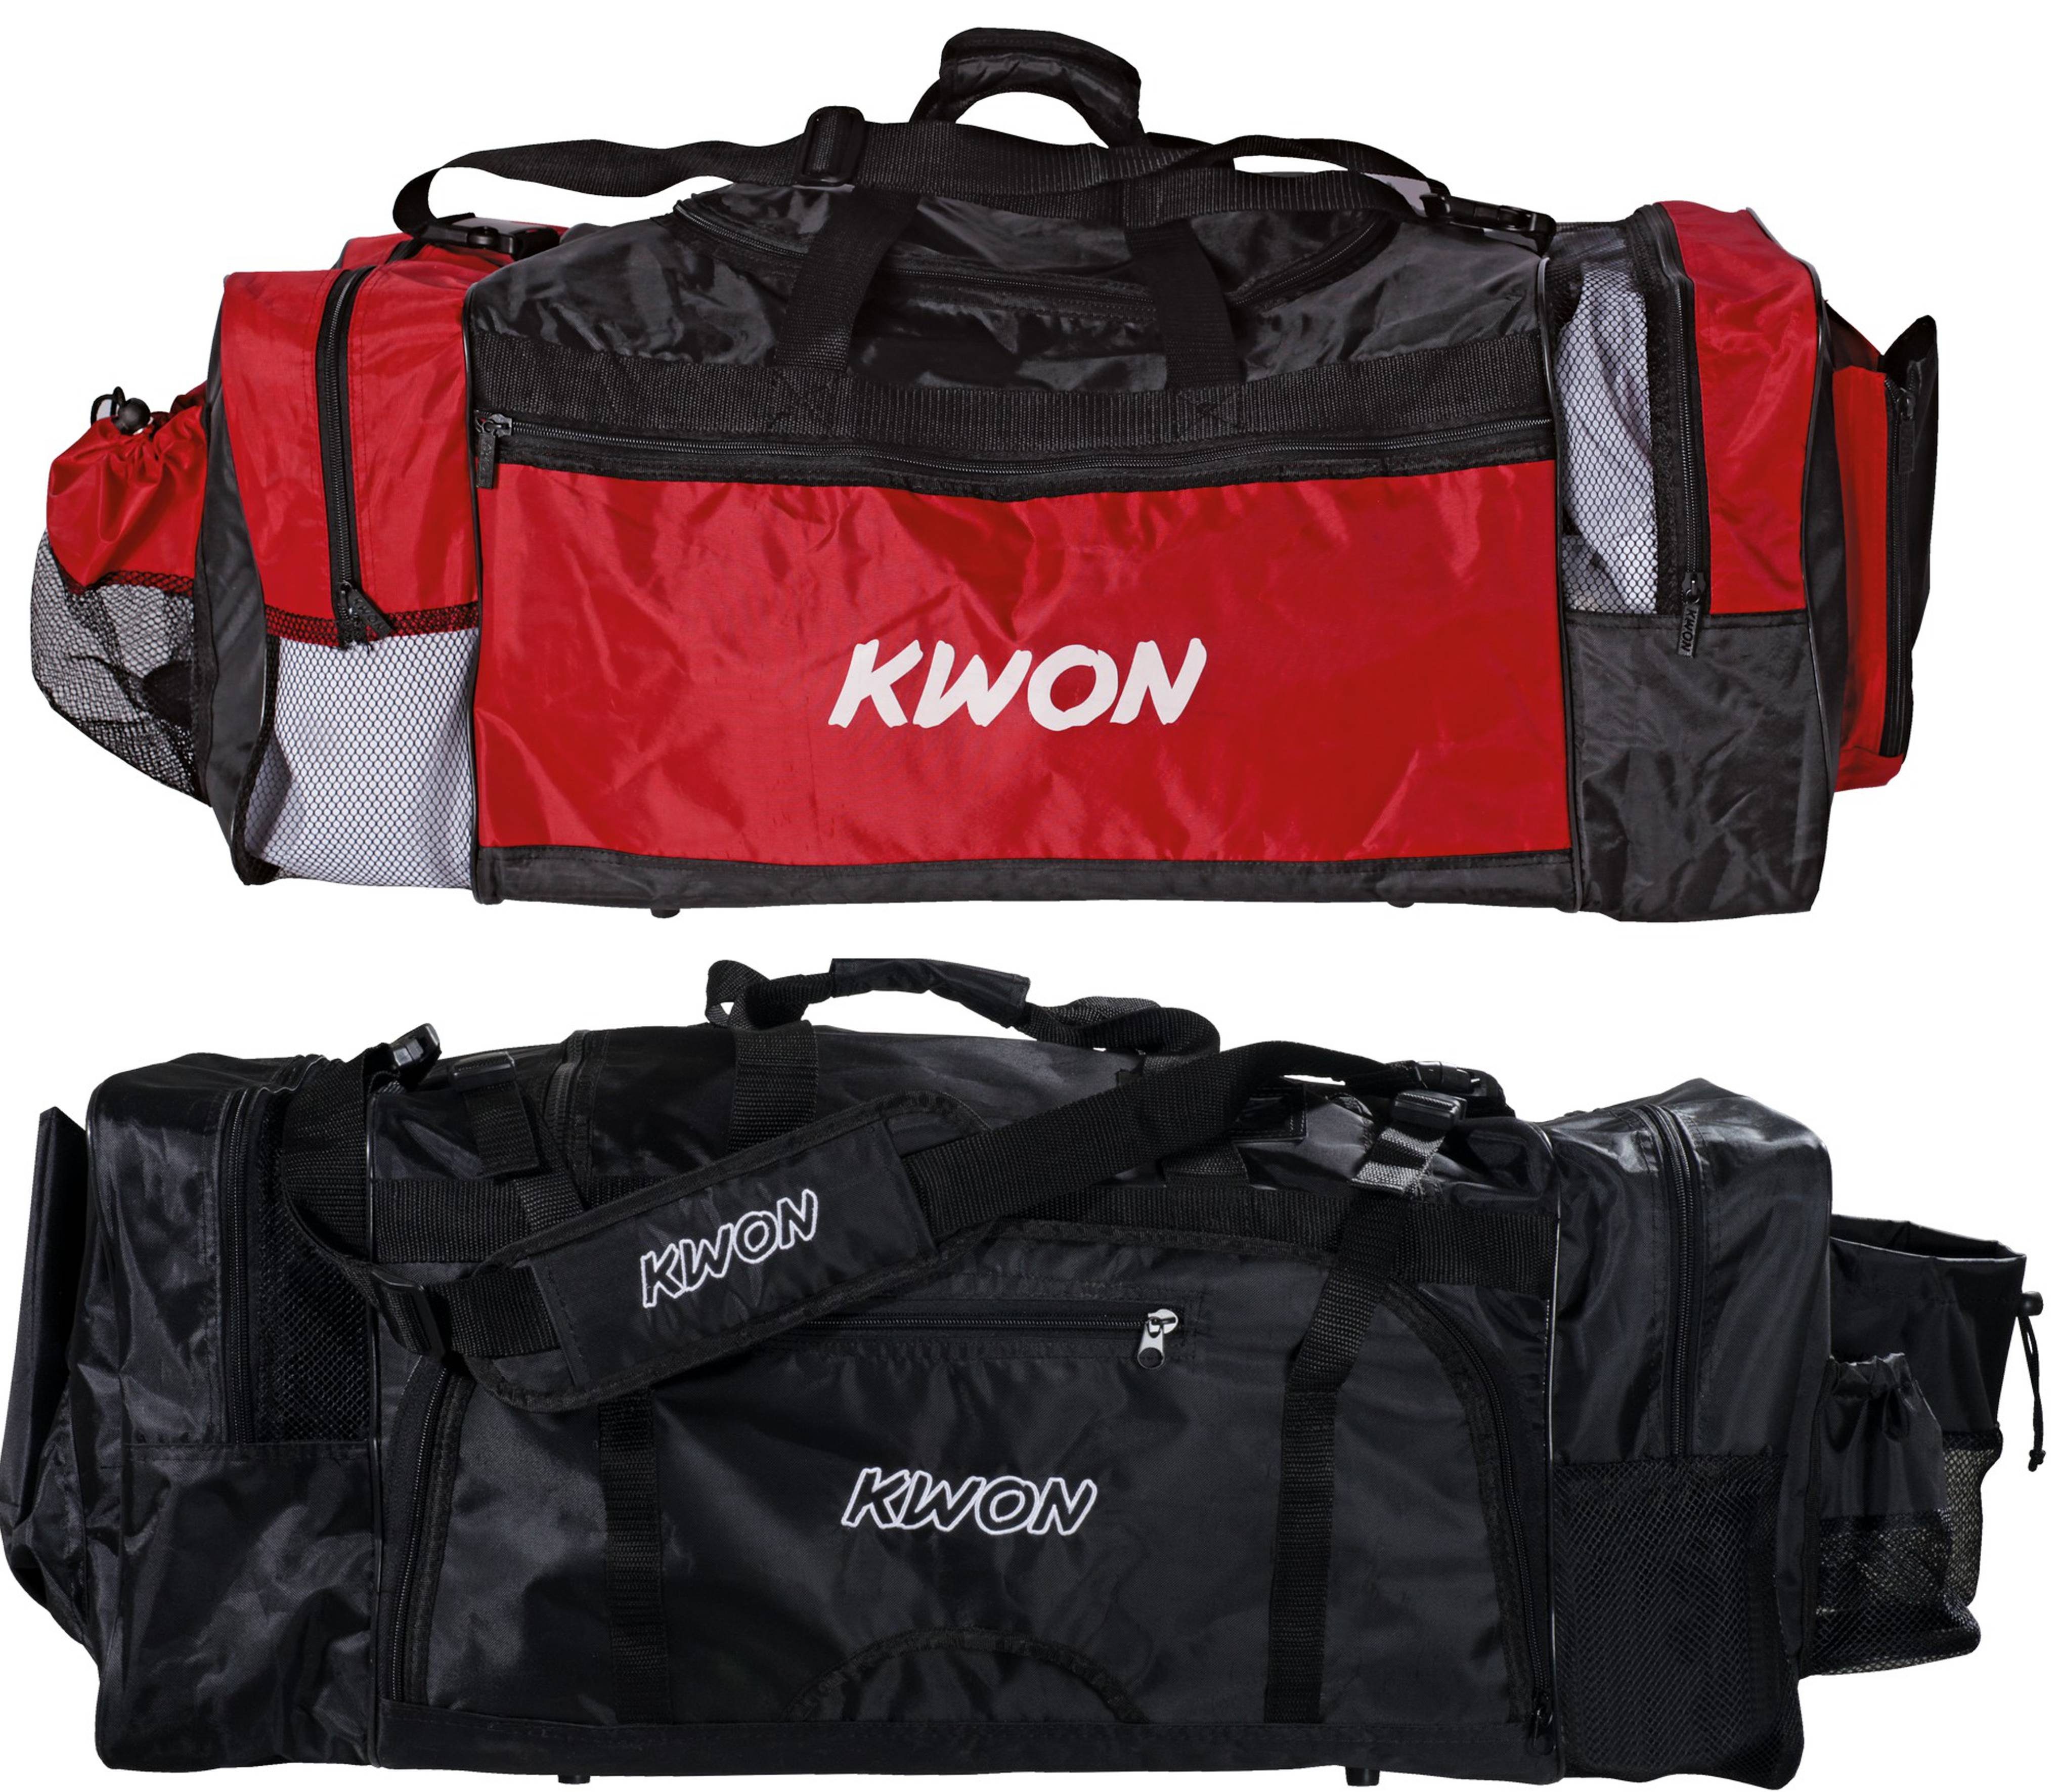 KWON Sporttasche Evolution schwarz rot 70 cm Taekwondo TKD Trainingstasche (Lieblingstasche, 2 Farben), Sehr viele praktische Fächer, geräumig, Nassfach | Sporttaschen